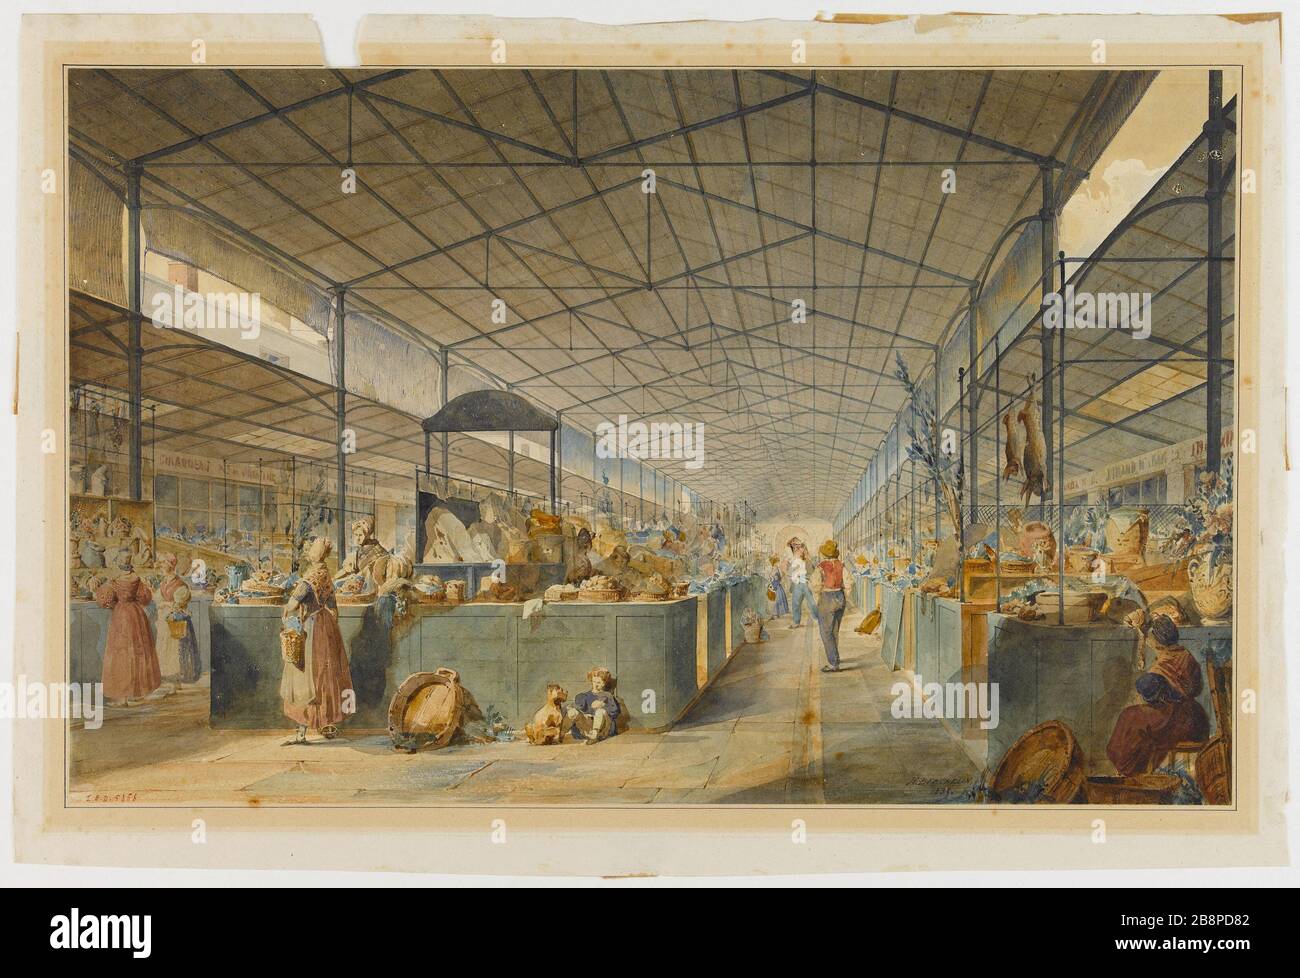 Interior old market Max Berthelin (1811-1877). Intérieur des anciennes Halles. Aquarelle sur trait. 1835. Paris, musée Carnavalet. Stock Photo